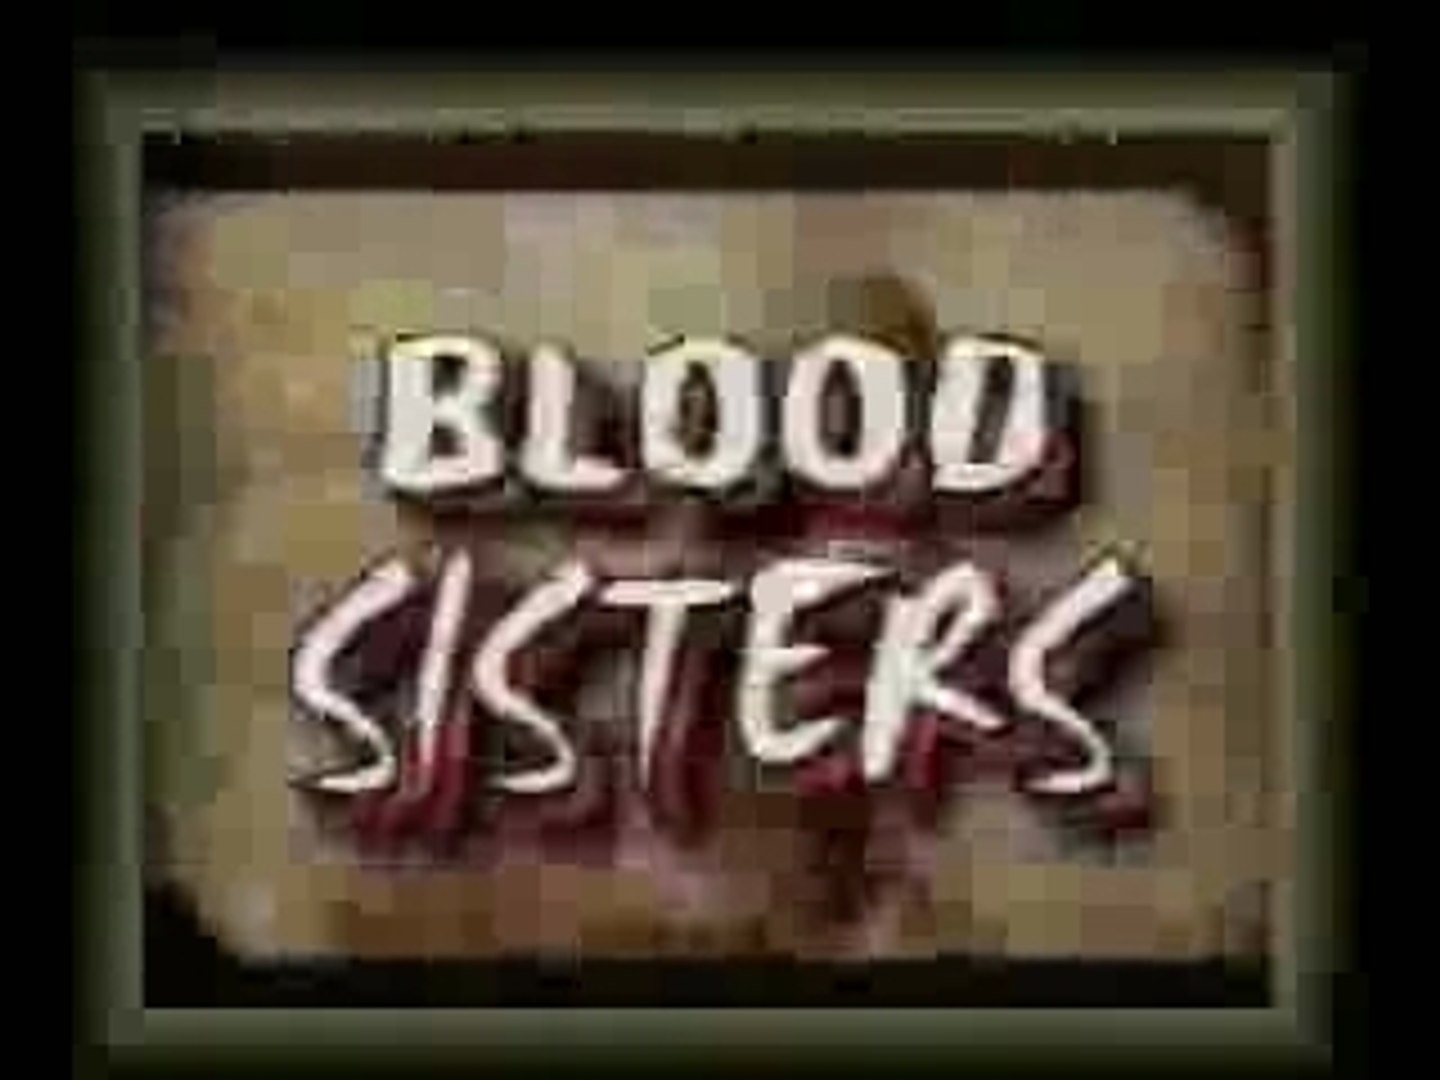 Blood sisters pdf free download movie